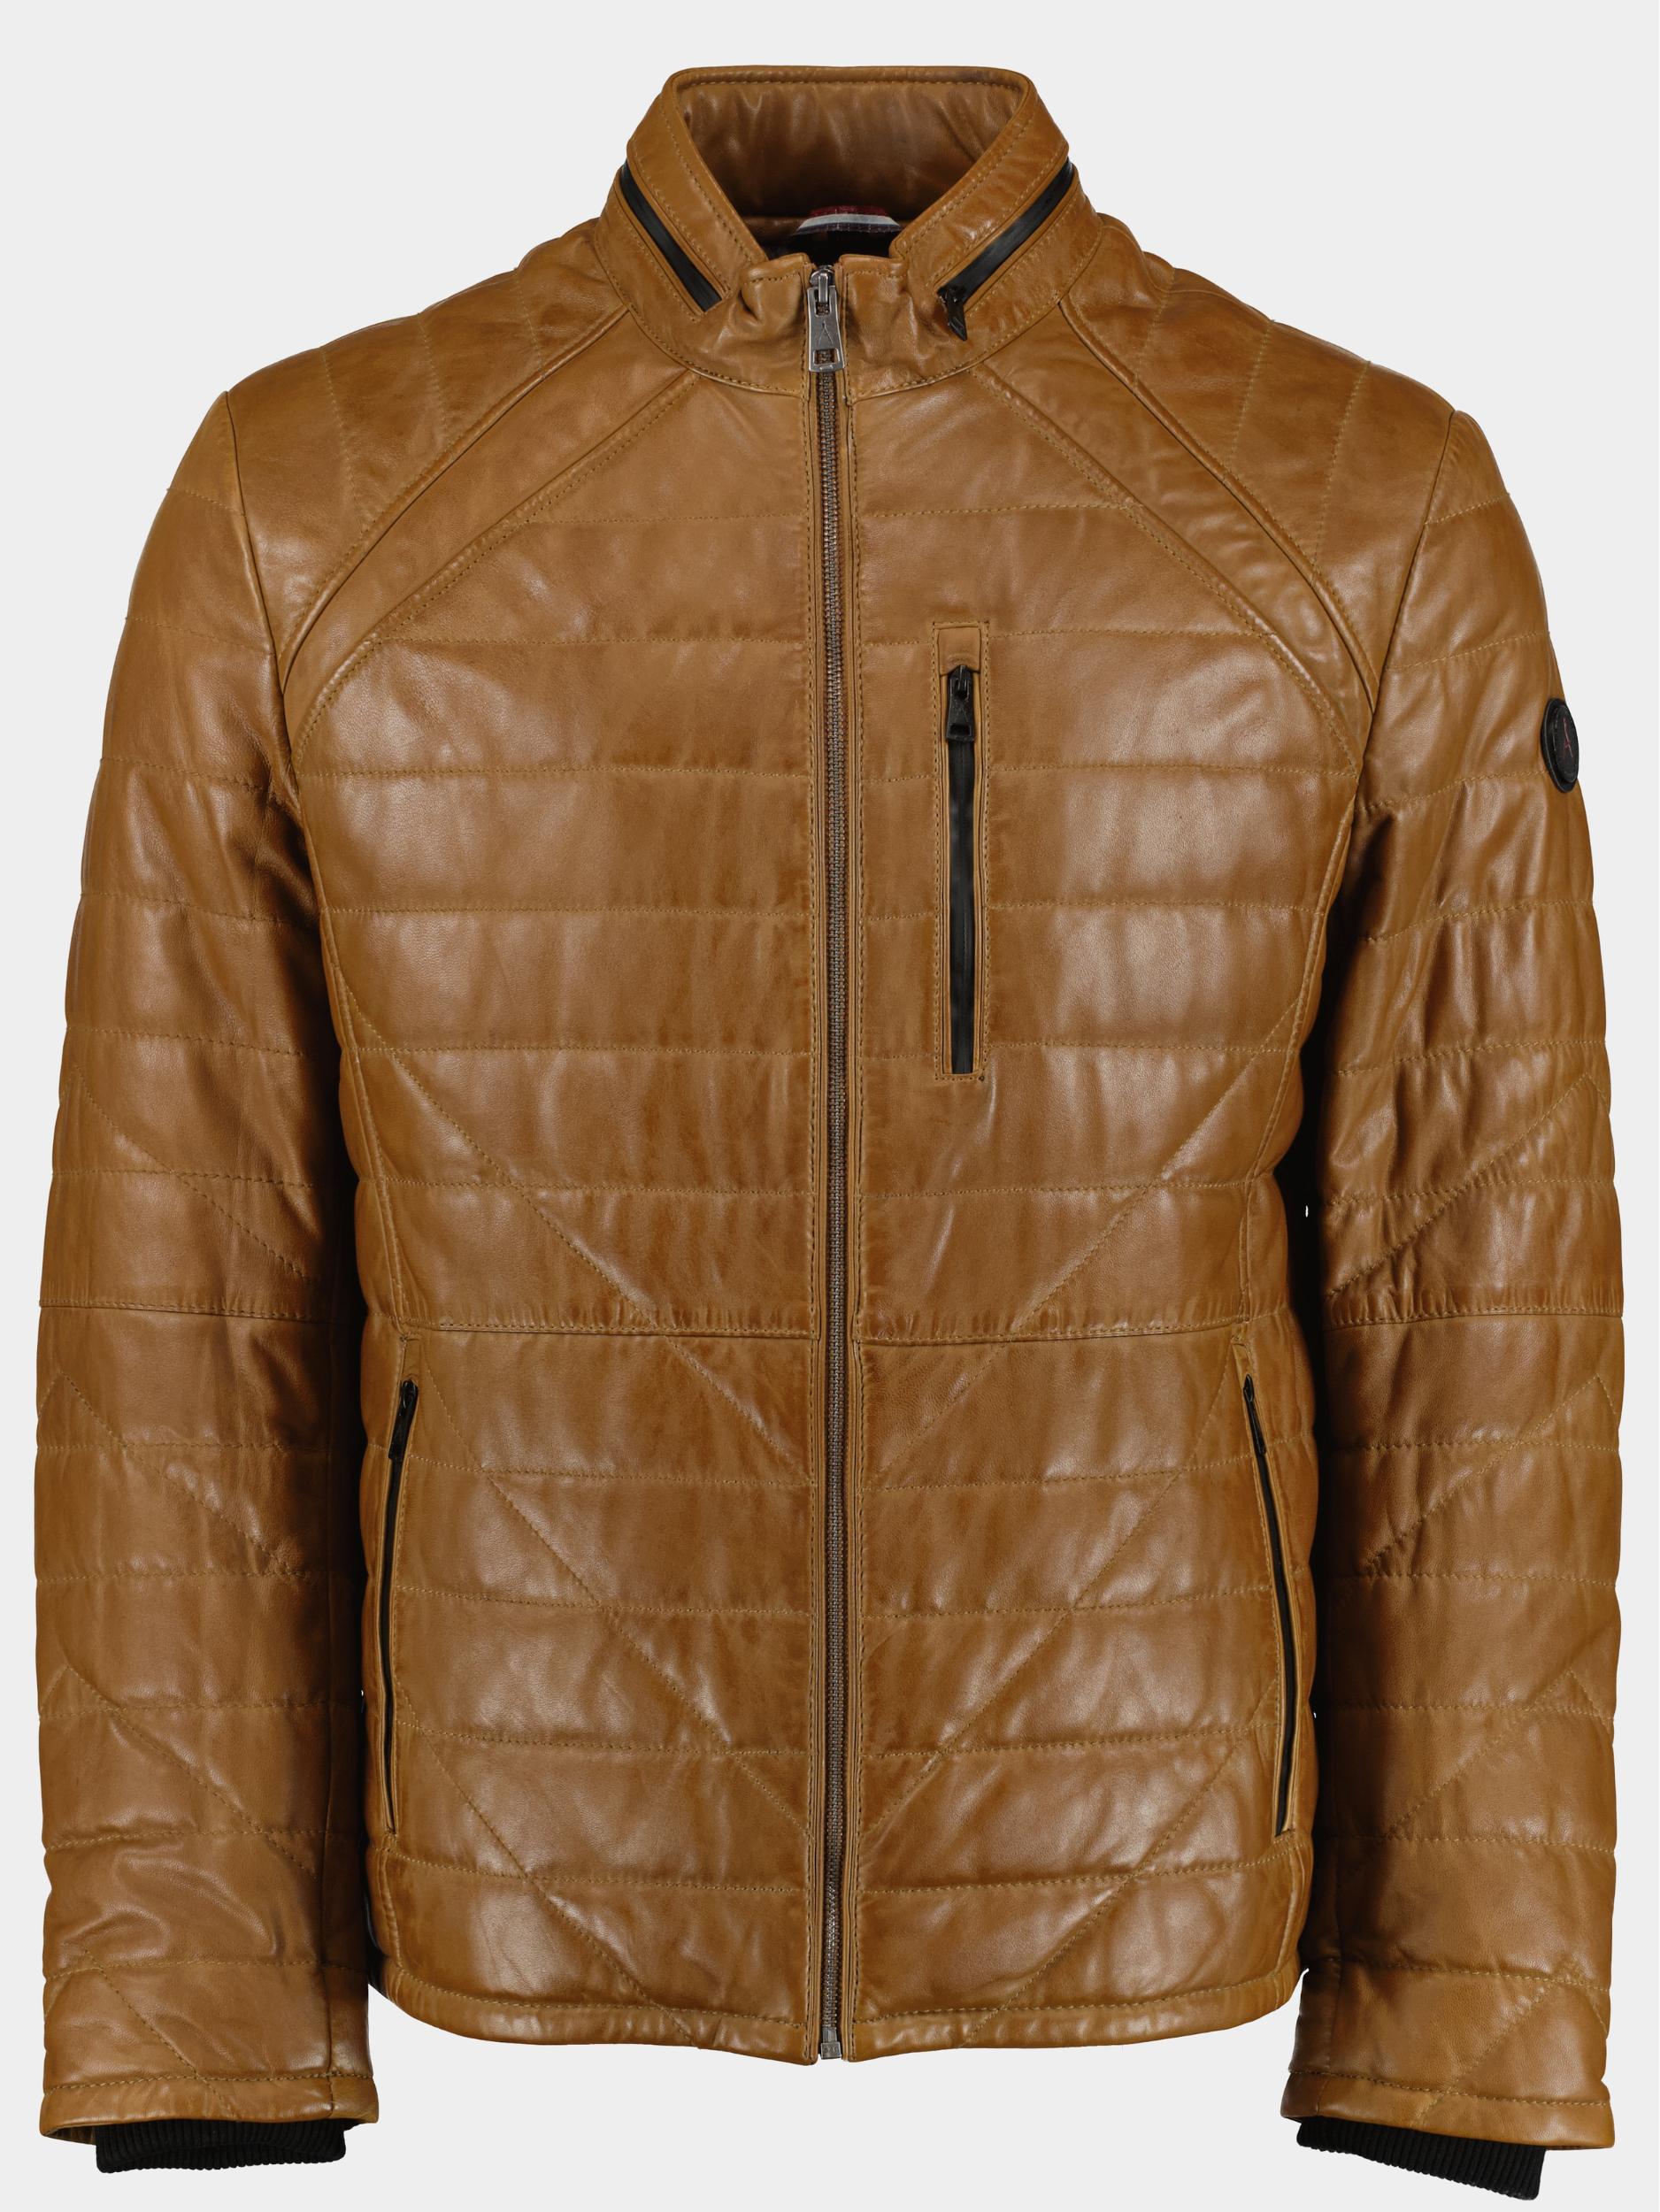 Donders 1860 Lederen Jack Beige Leather Jacket 52215.2/220